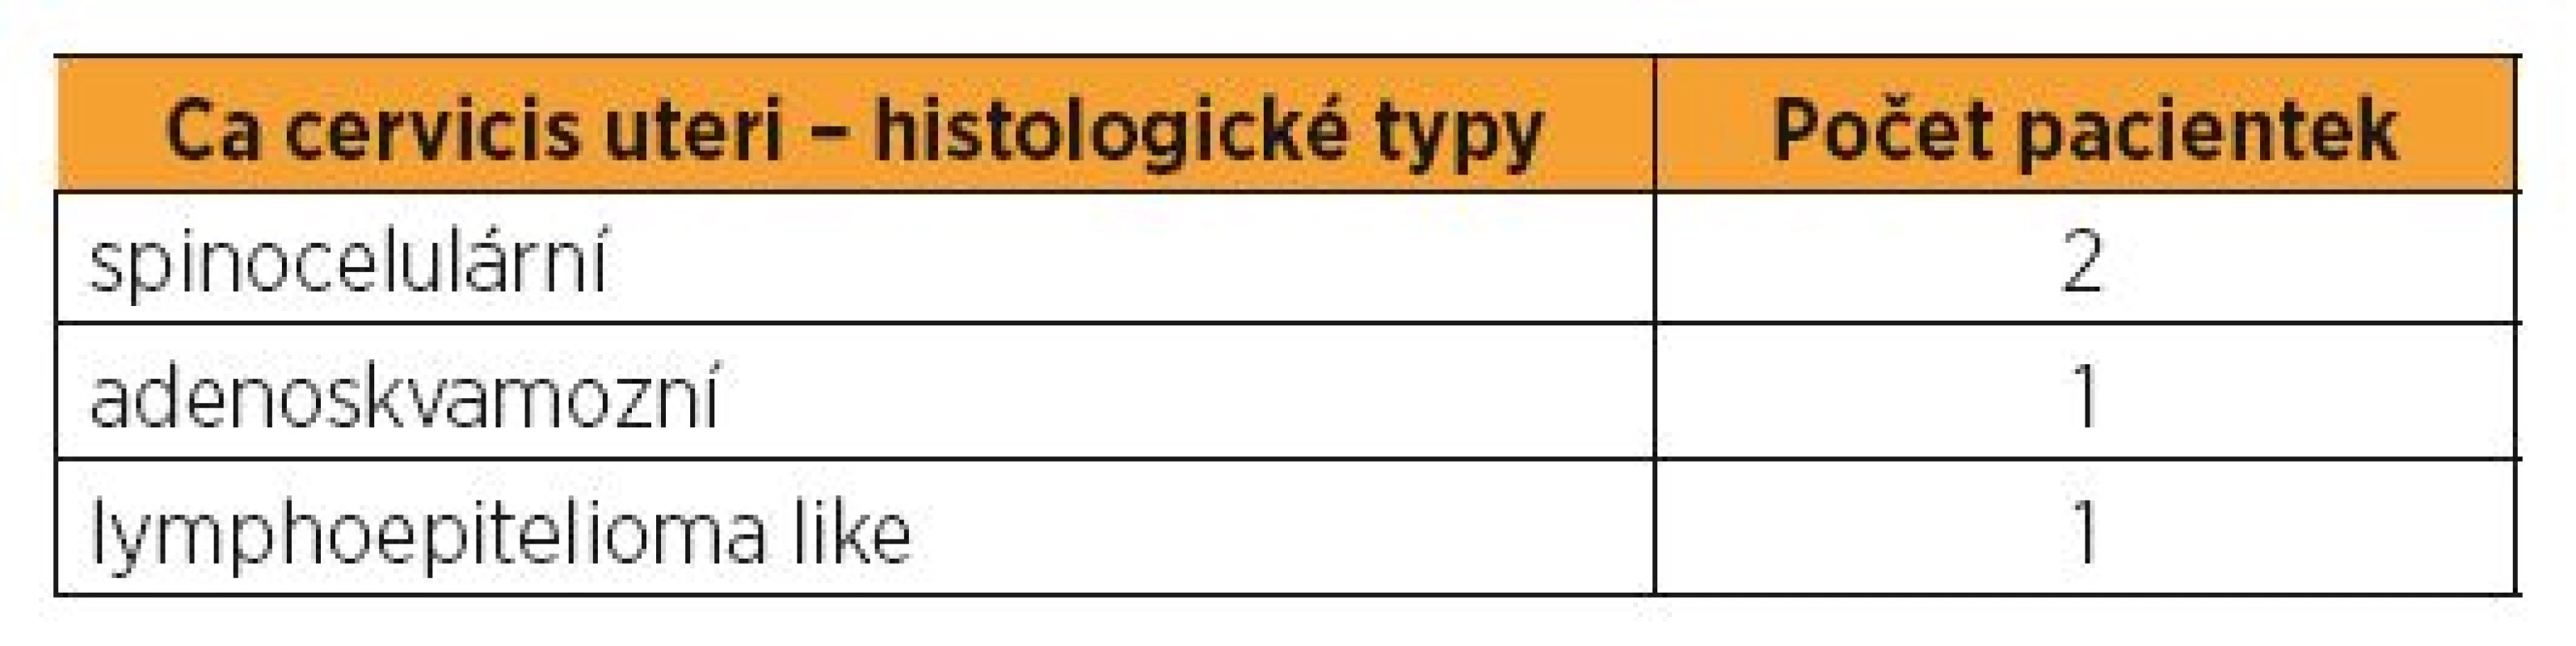 Histologické typy u karcinomu děložního hrdla